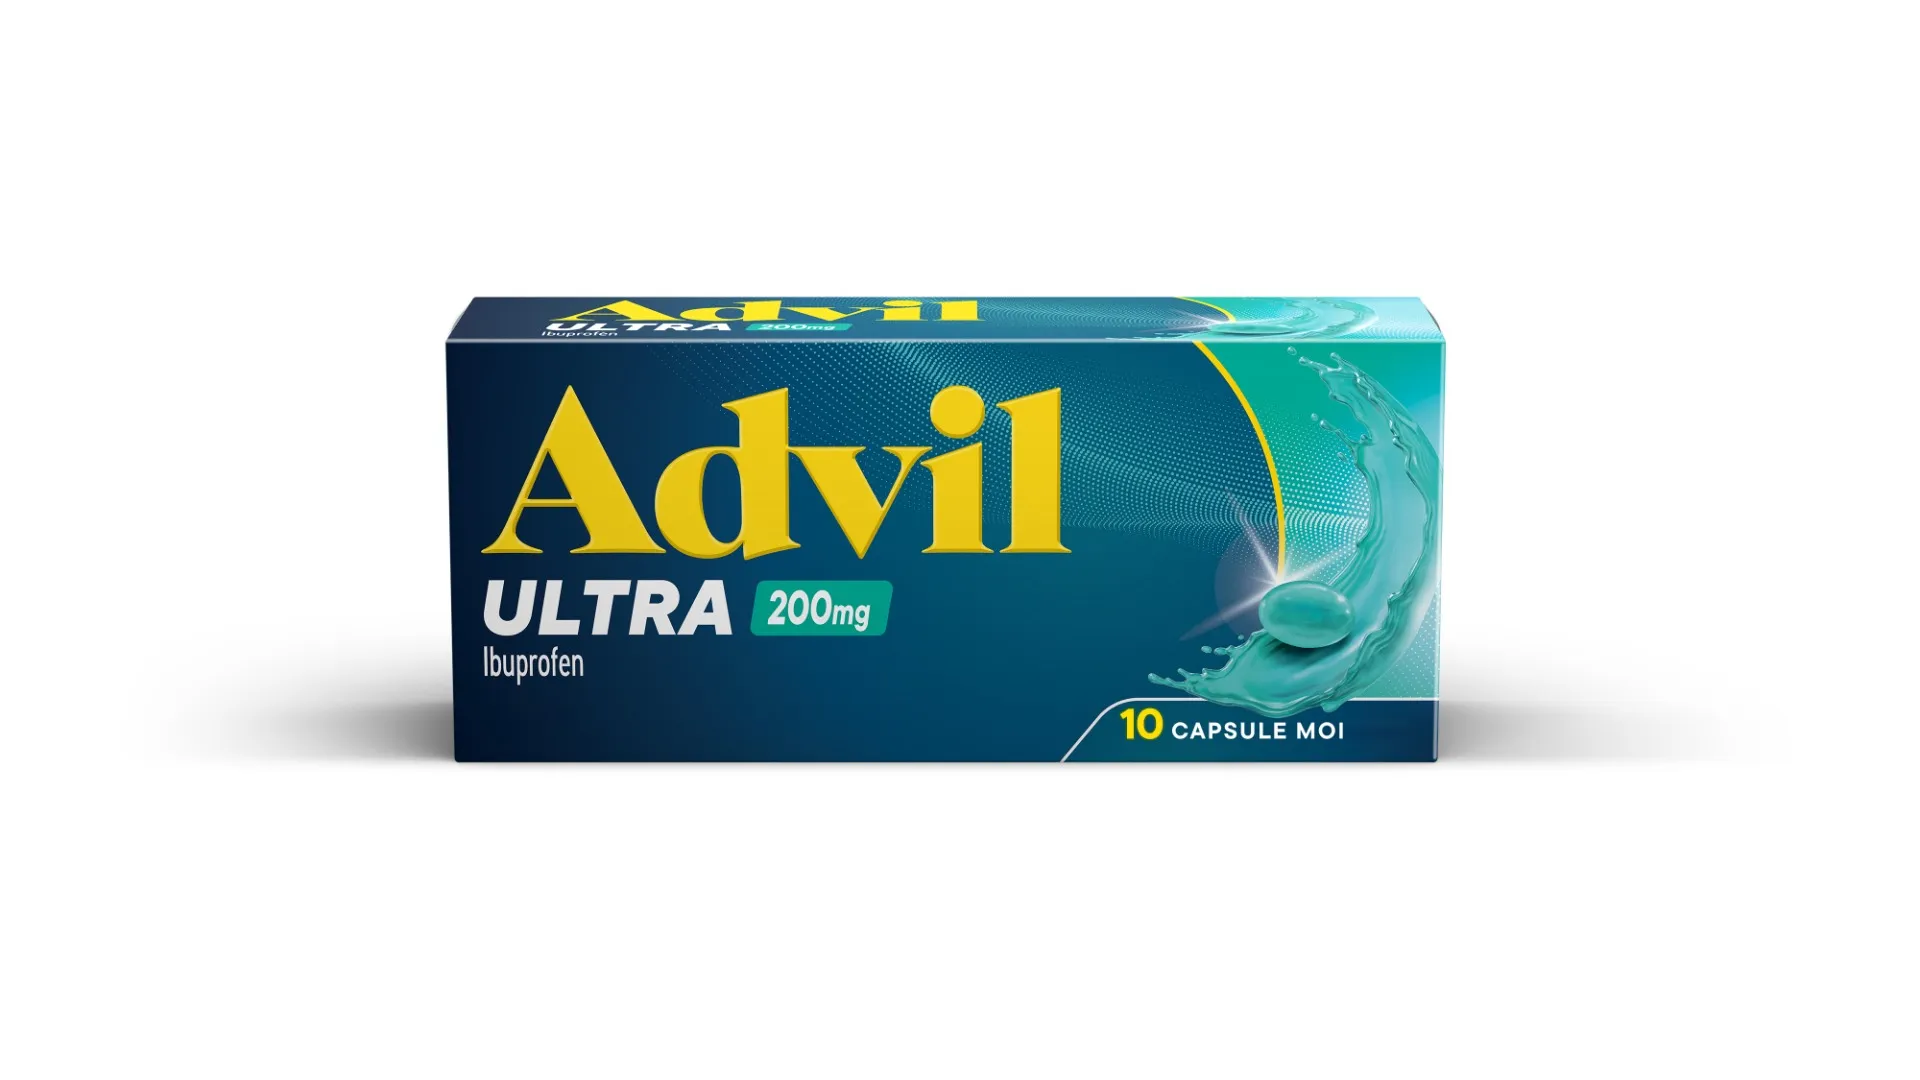 Advil Ultra 200mg, 10 capsule moi, GSK